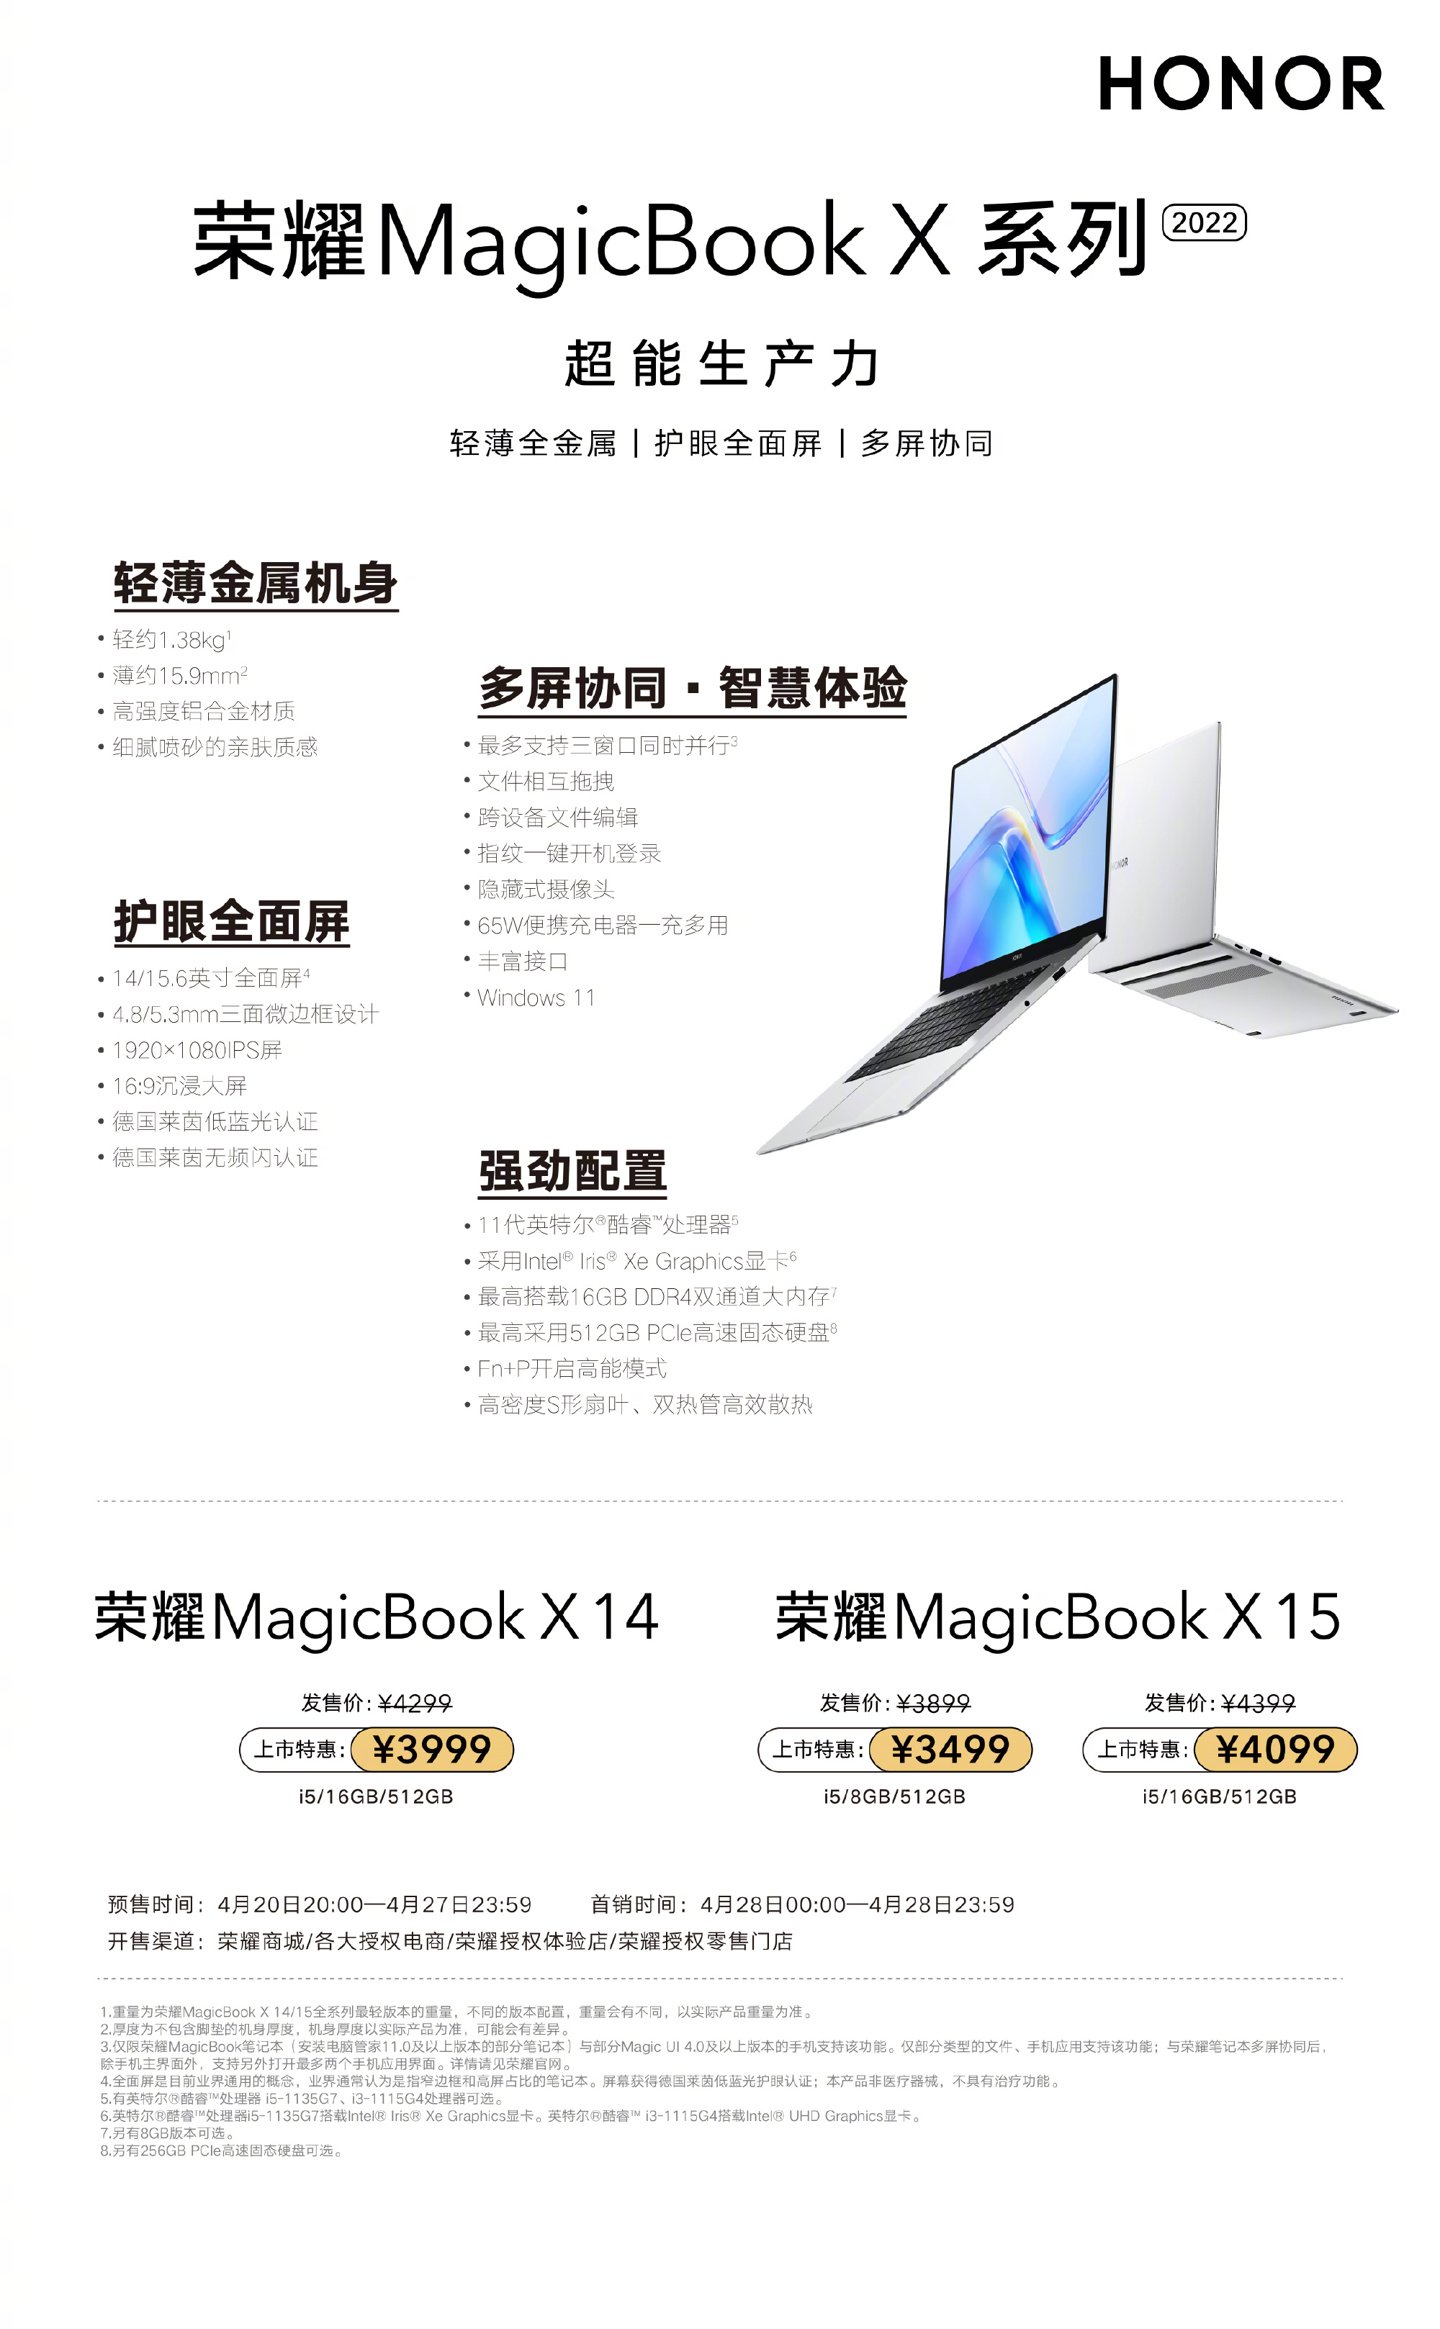 Випущено ноутбуки серії Honor MagicBook X 2022